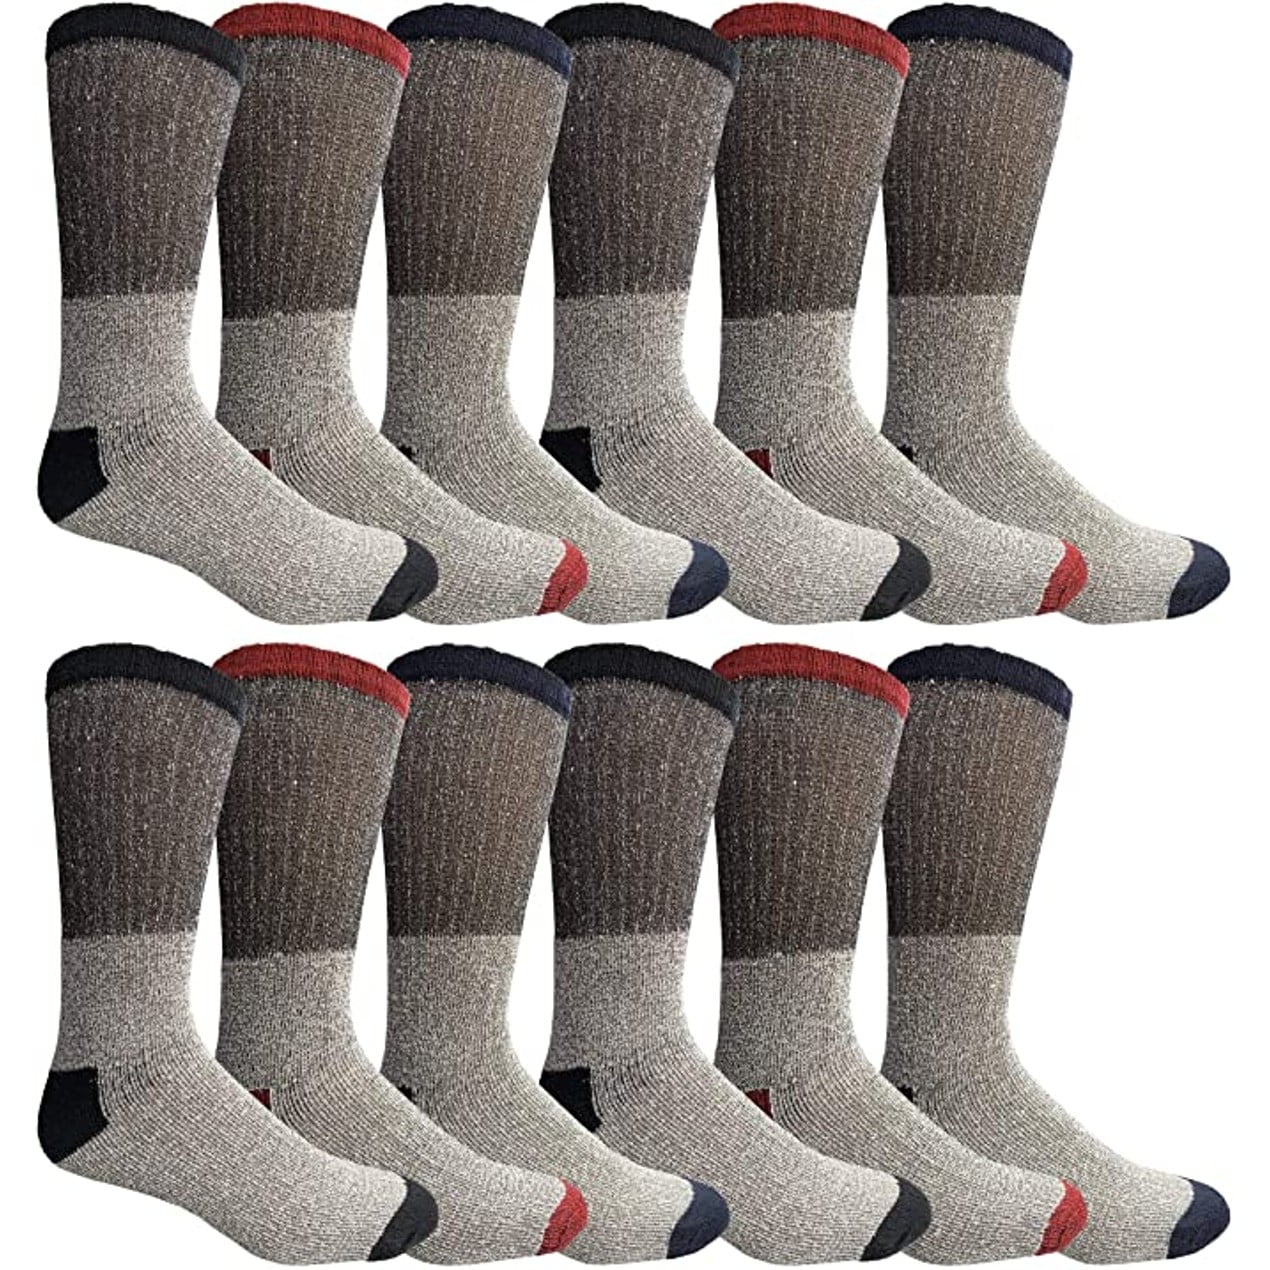 12-15 Mens NWT Thermal Boot Socks BIG TALL WIDE 3prs Gray/Black Lightweight XL